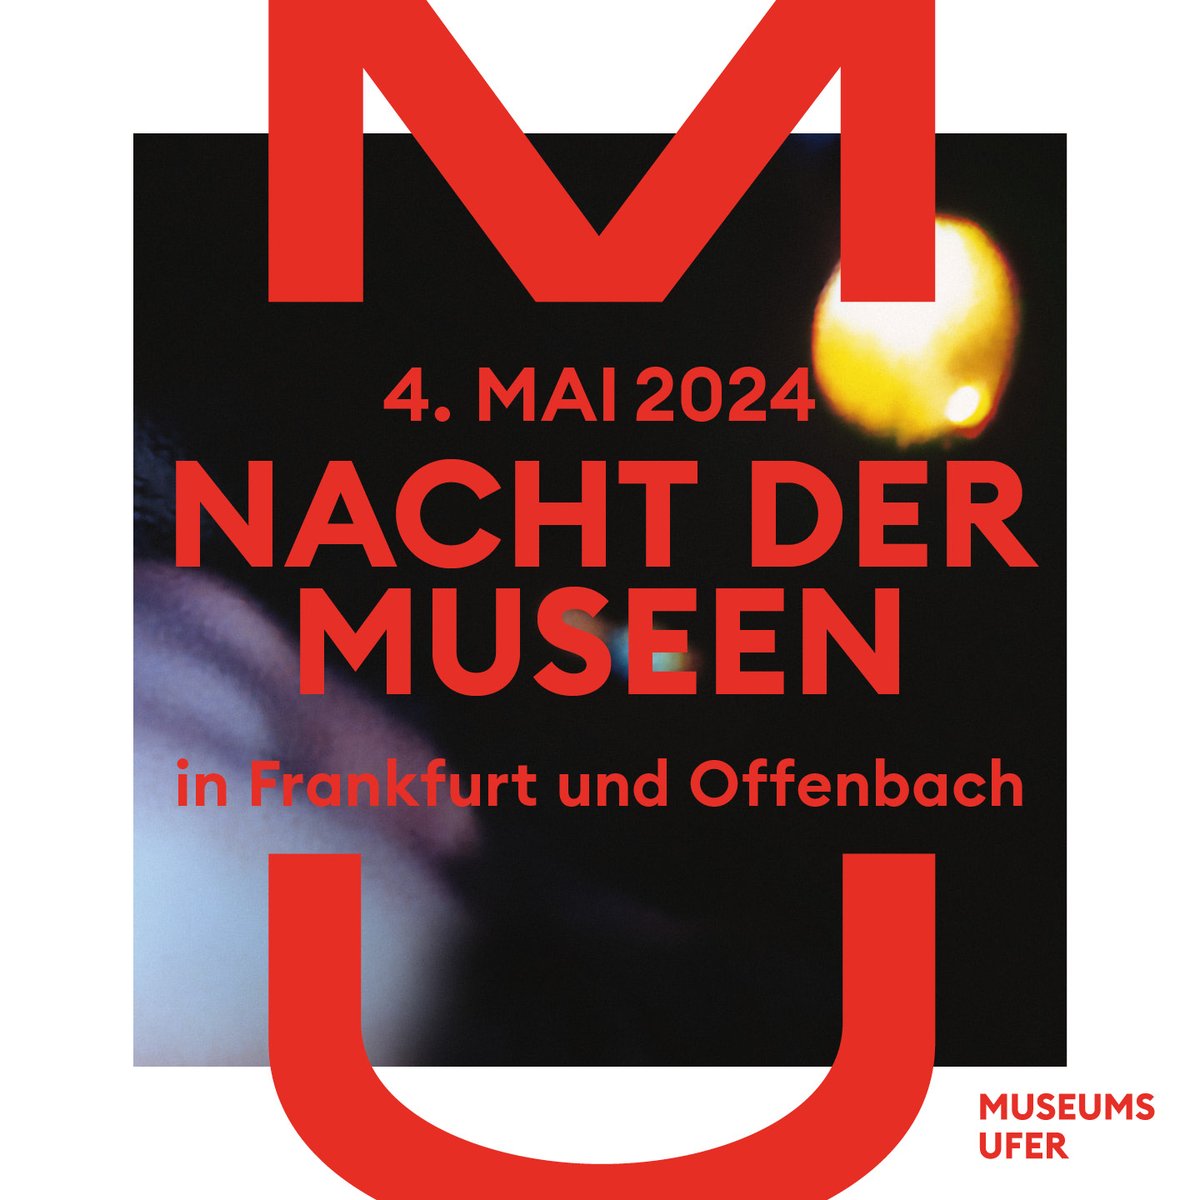 Forschung hautnah erleben! Am 04.05. findet die #NachtderMuseen in Frankfurt statt und auch wir haben wieder unsere Türen für euch geöffnet!🦖✨ Infos und Tickets 👉 nacht.museumsufer.de